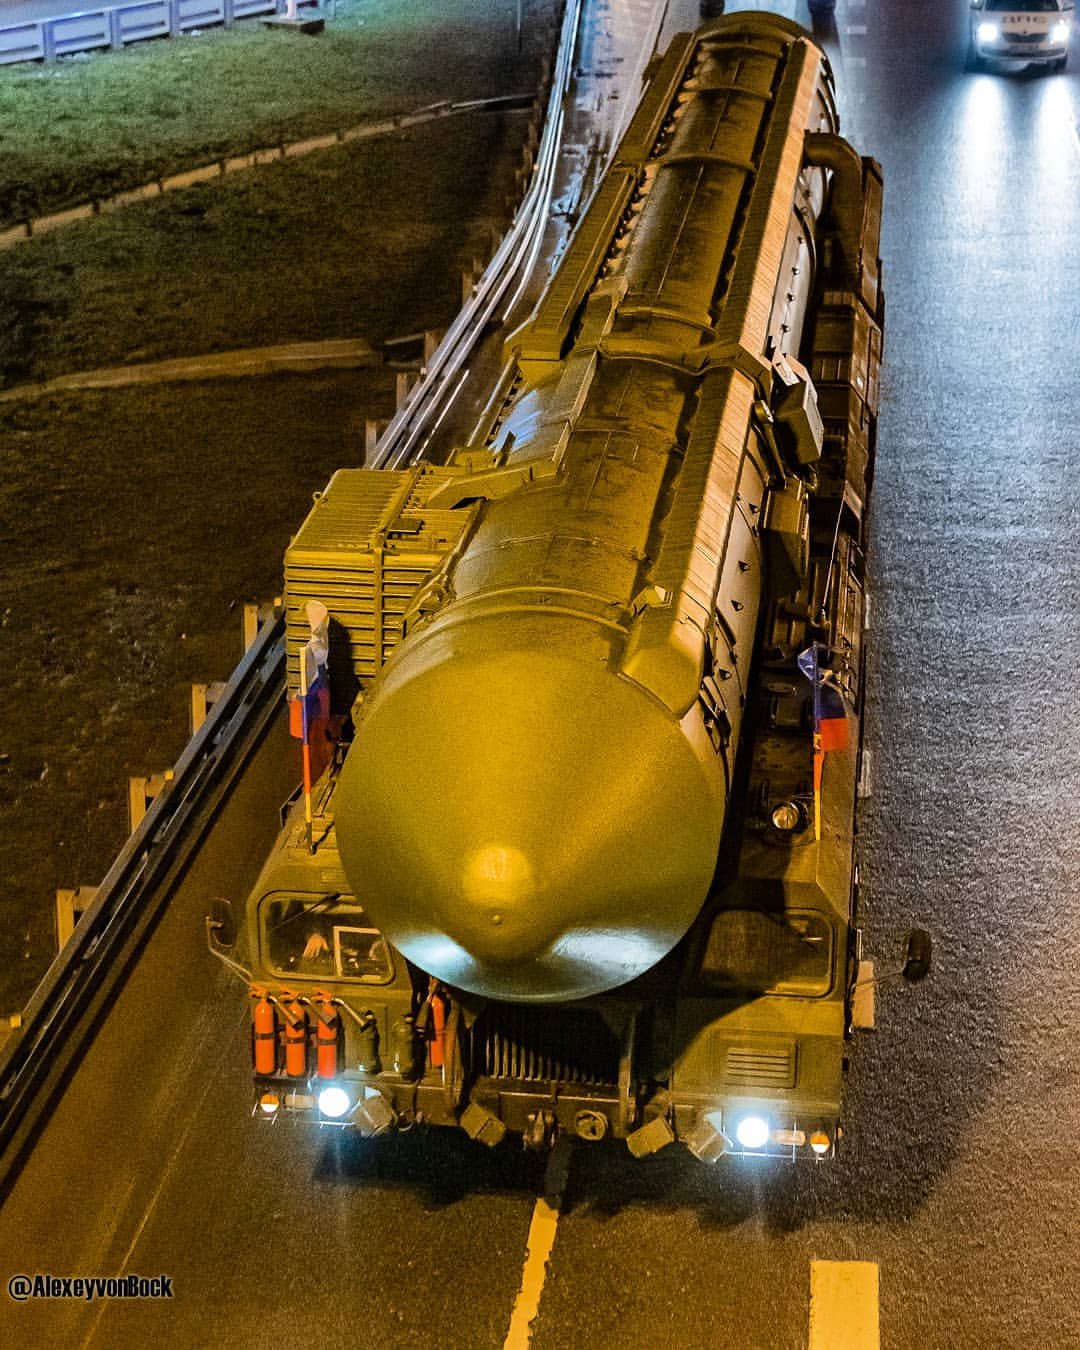 俄罗斯亚尔斯洲际弹道导弹和莫斯科红场的约会